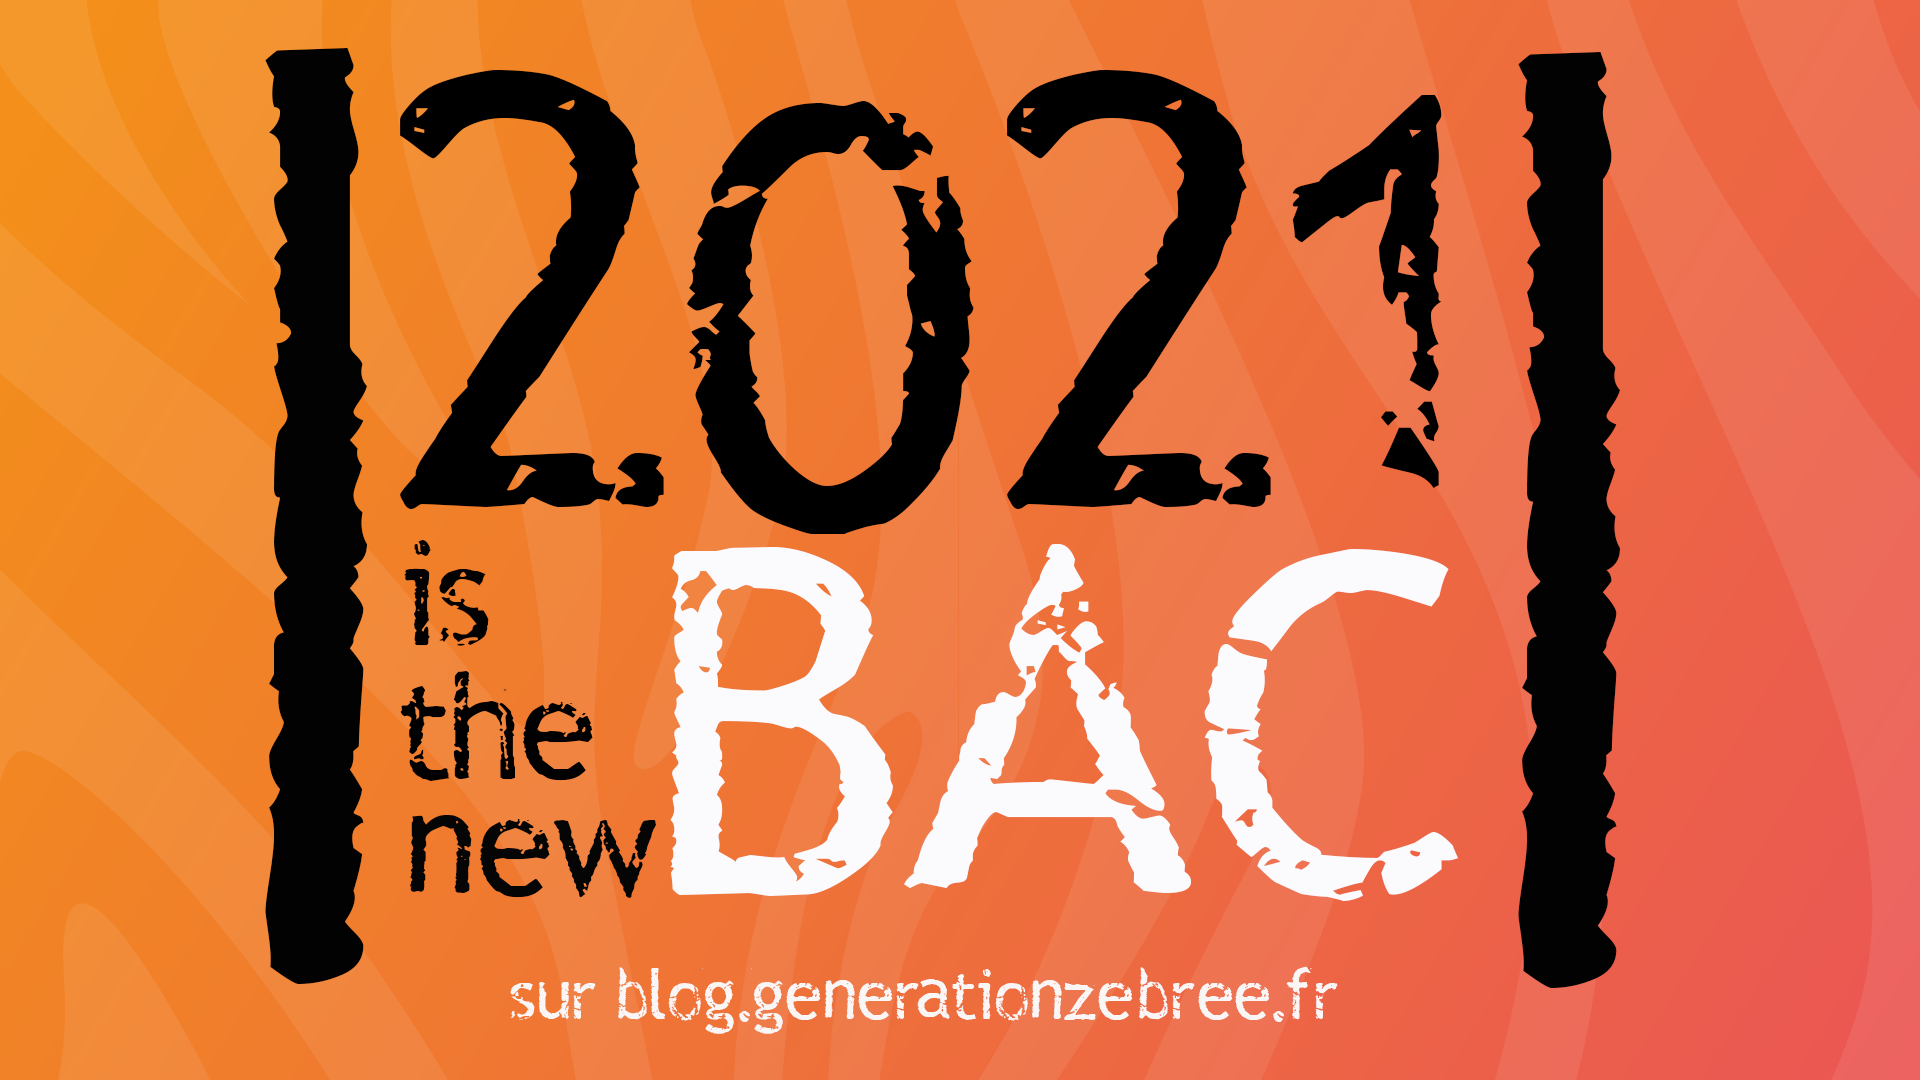 2021 is the new bac - réforme du bac - bac 2021